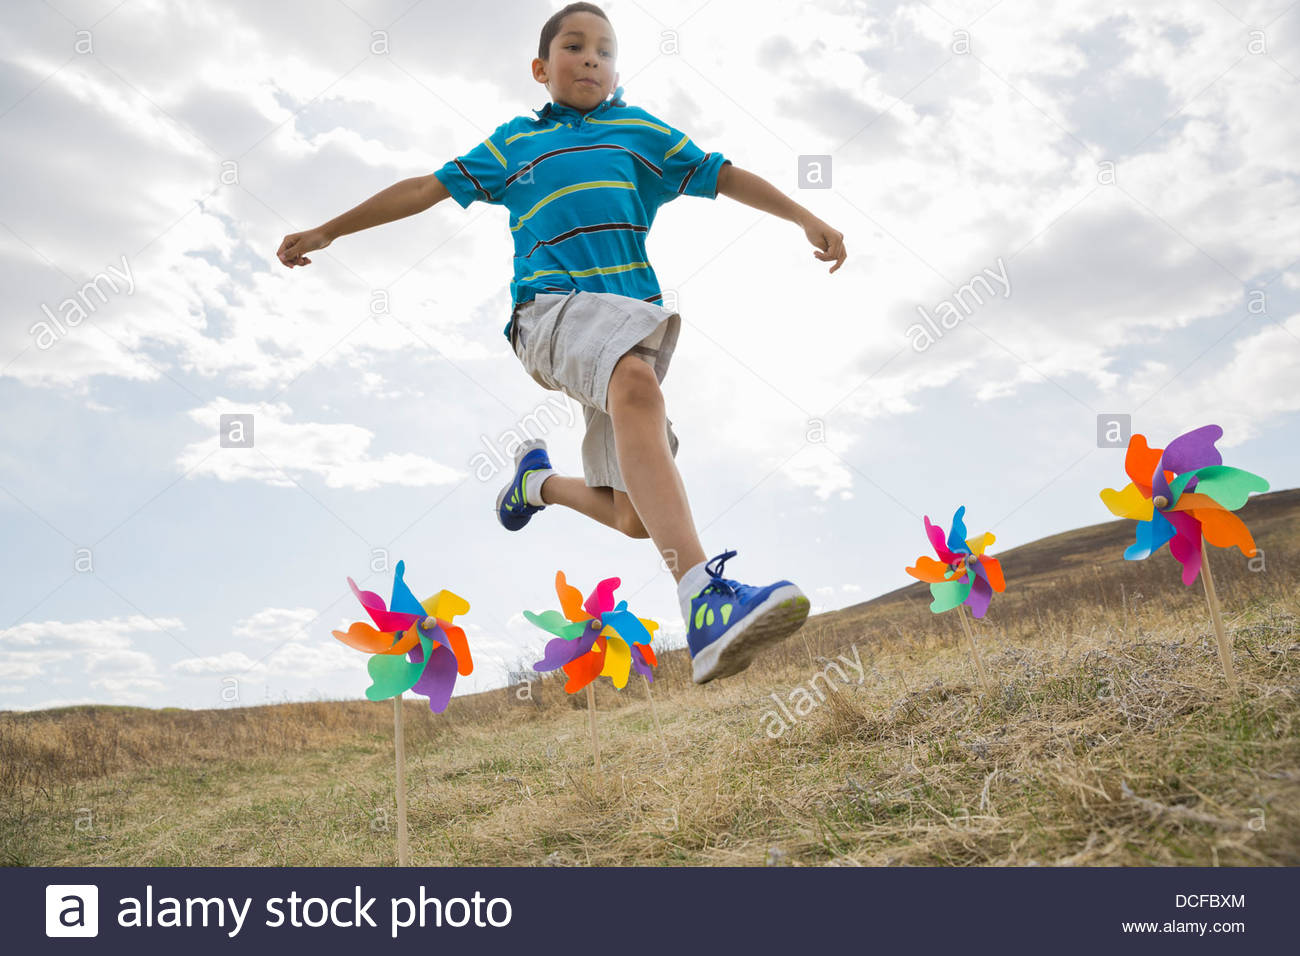 El colegial saltar por encima de molinetes en campo Foto de stock